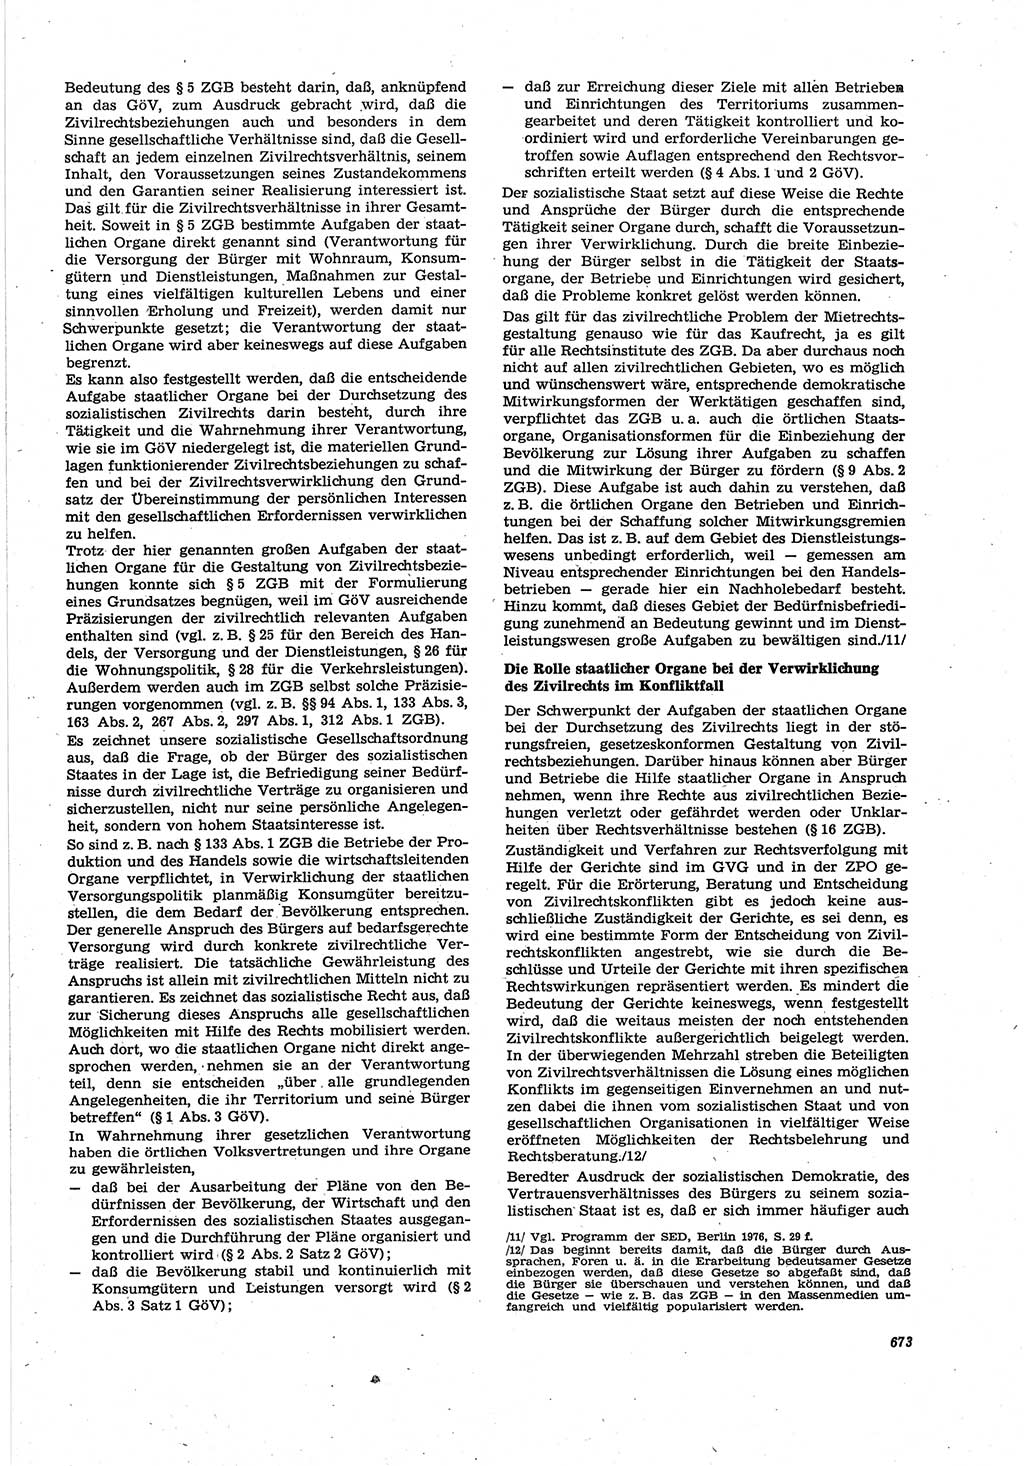 Neue Justiz (NJ), Zeitschrift für Recht und Rechtswissenschaft [Deutsche Demokratische Republik (DDR)], 30. Jahrgang 1976, Seite 673 (NJ DDR 1976, S. 673)